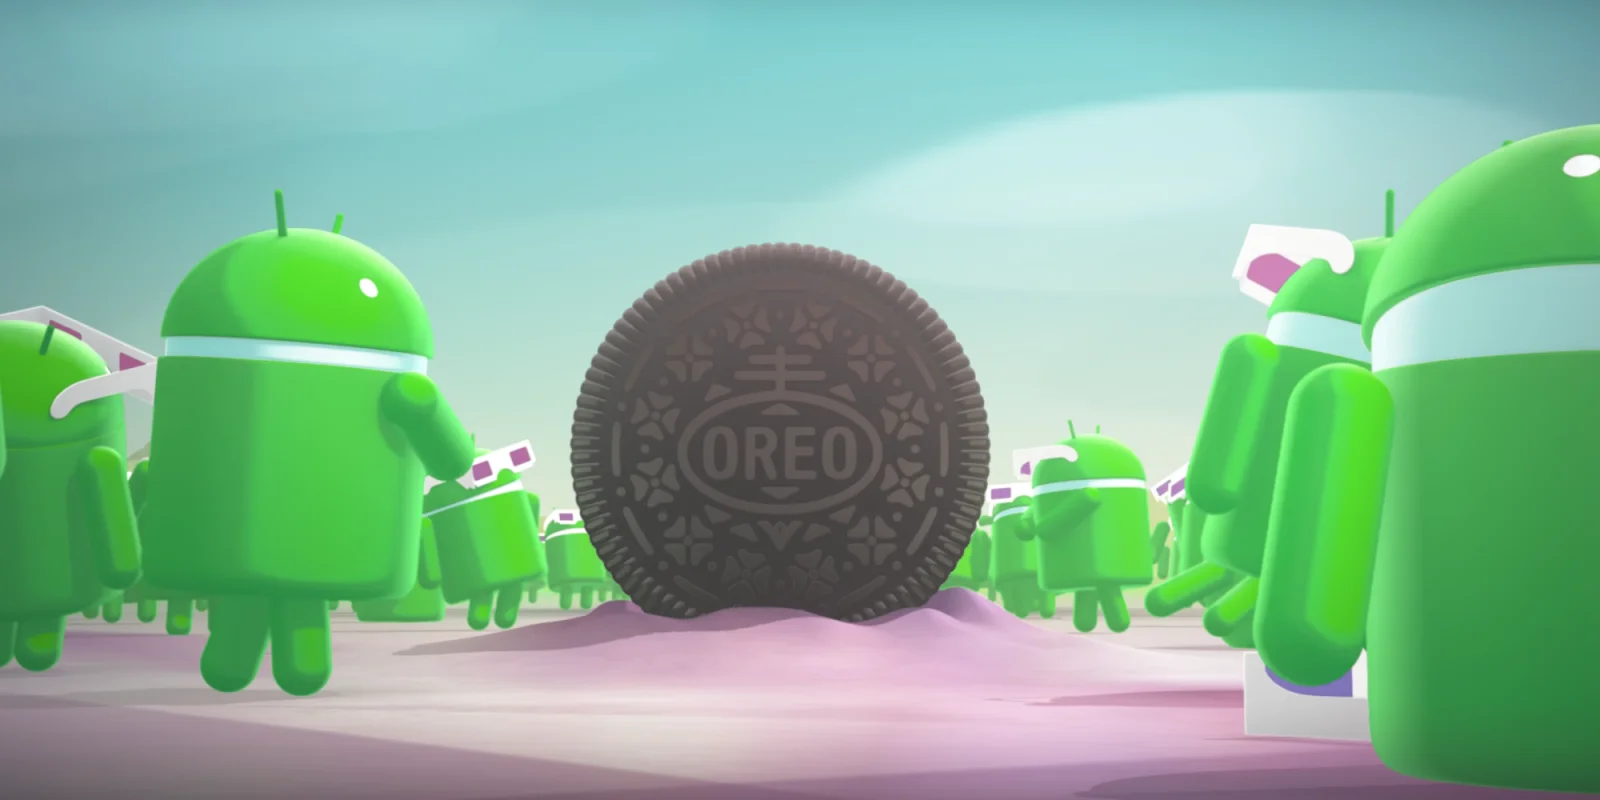 Вышла Android 8.0 Oreo. Что в ней новенького? - фото 1